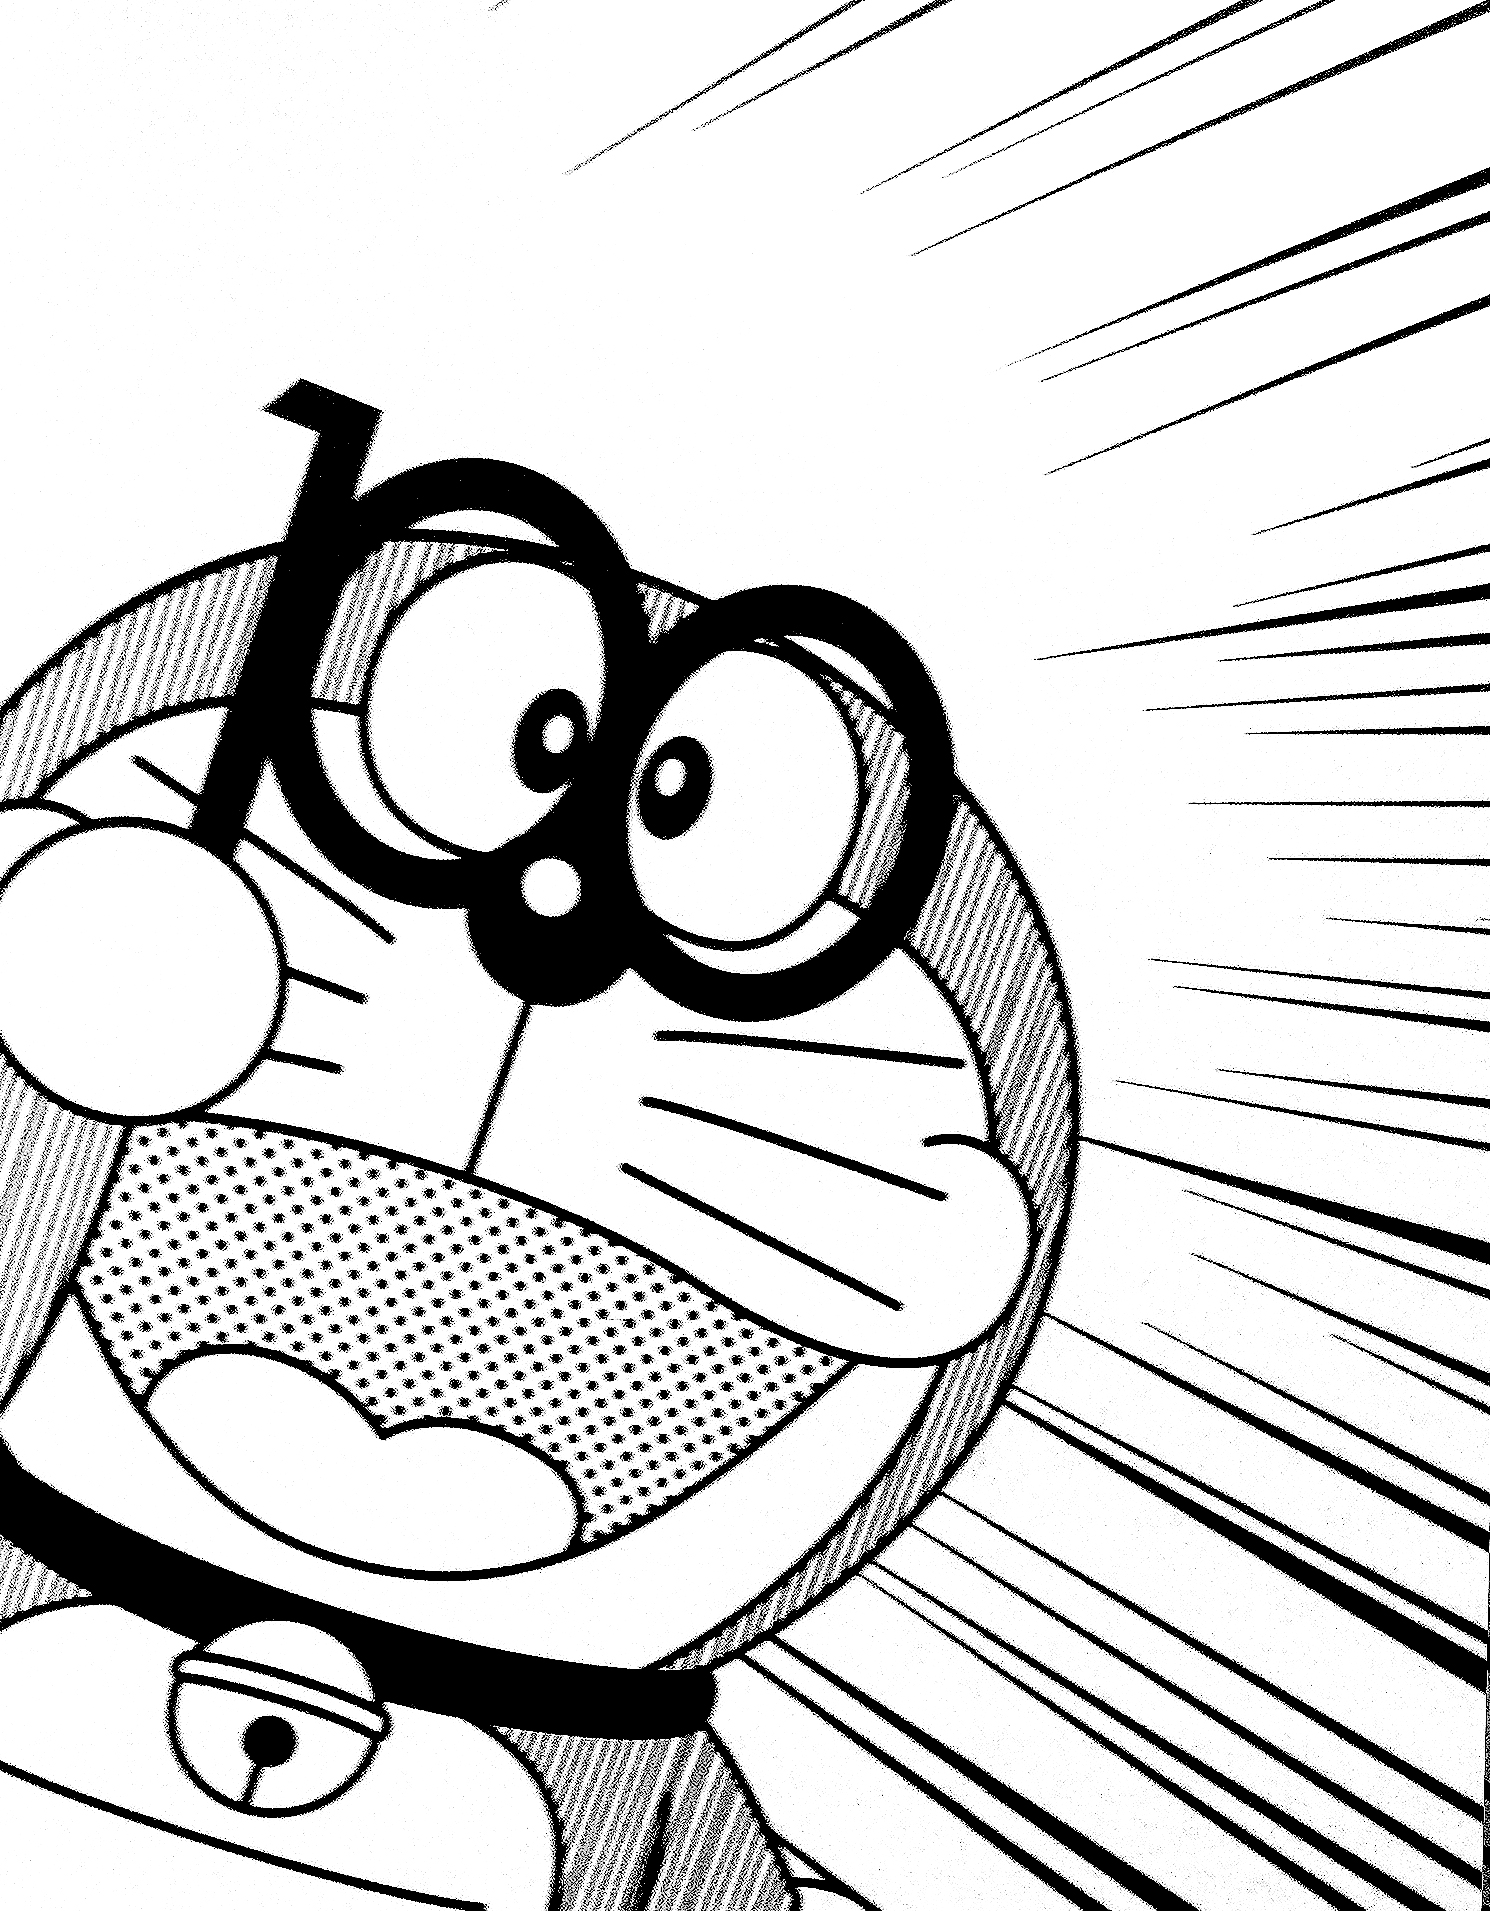 Gambar Doodle Doraemon Populer Dan Terlengkap Top Meme